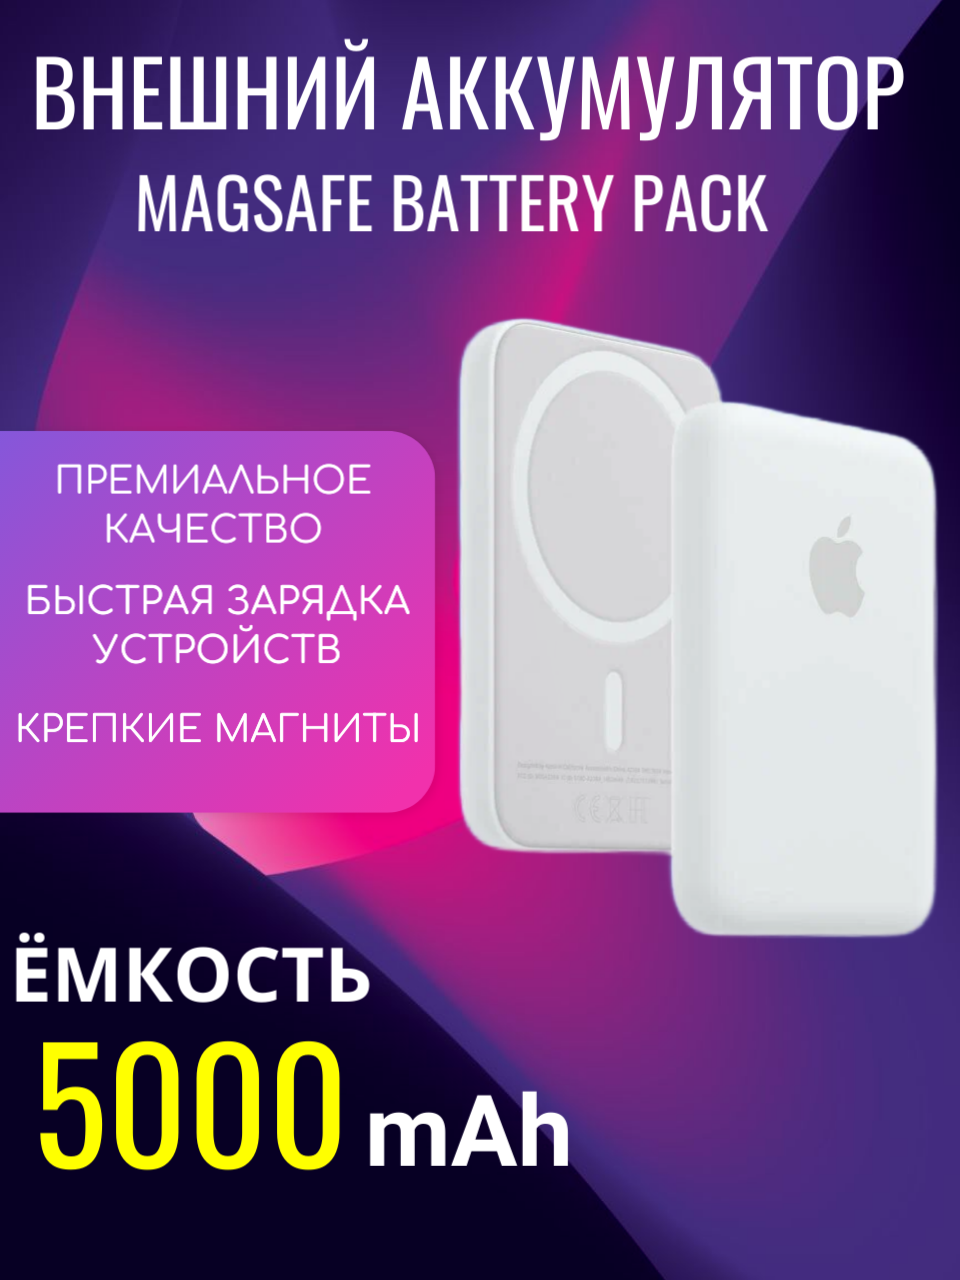 Внешний аккумулятор Magsafe Battery Pack 5000 mAh